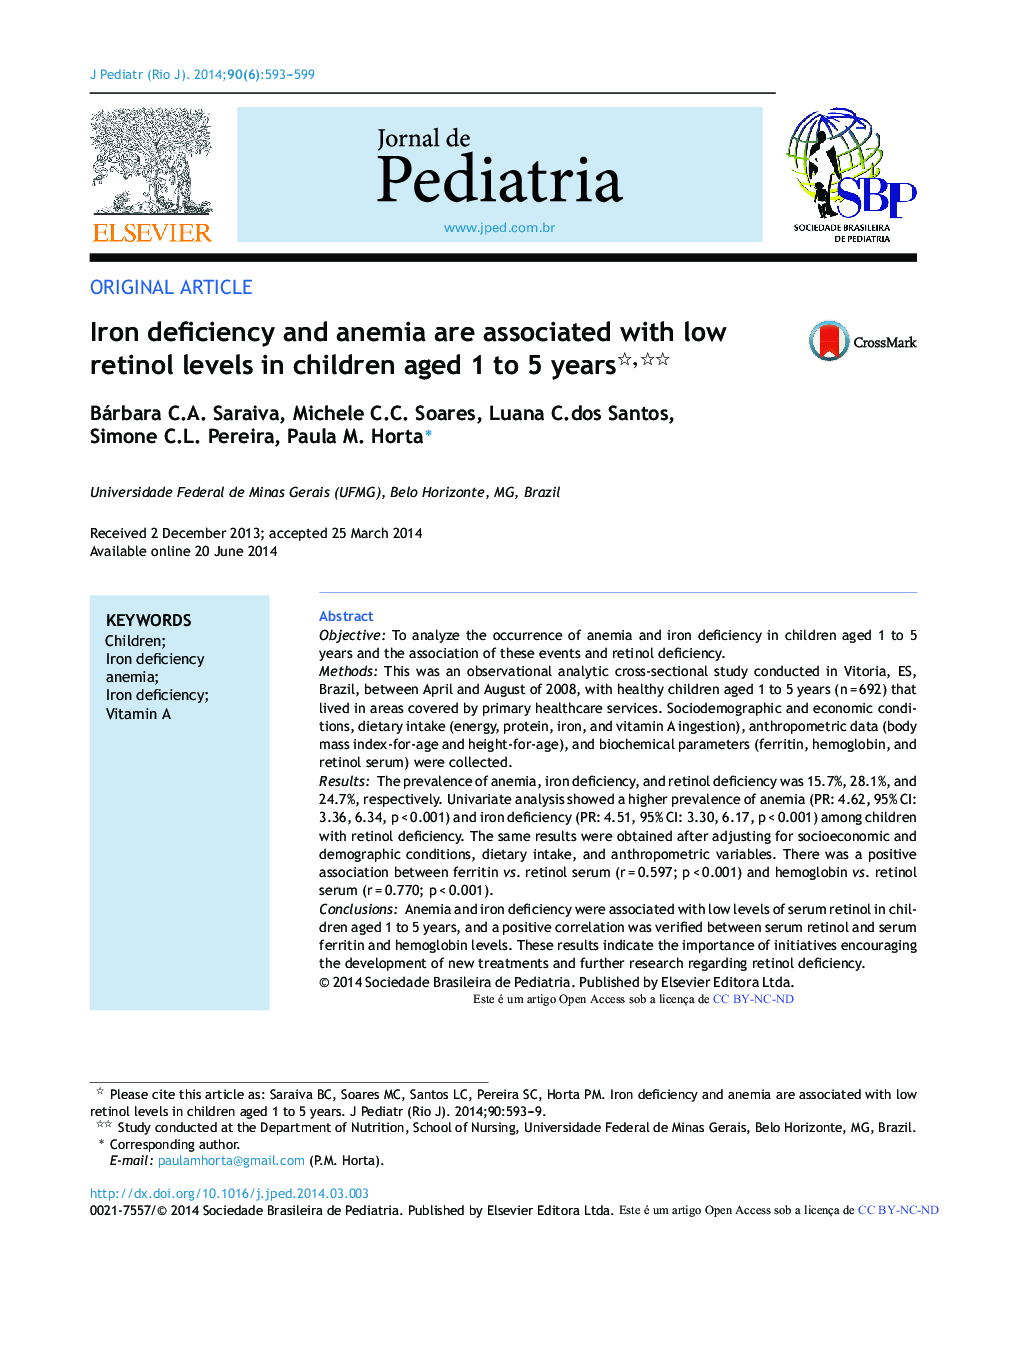 کمبود آهن و کم خونی با سطوح پایین رتینول در کودکان 1 تا 5 ساله ارتباط دارد؟ 